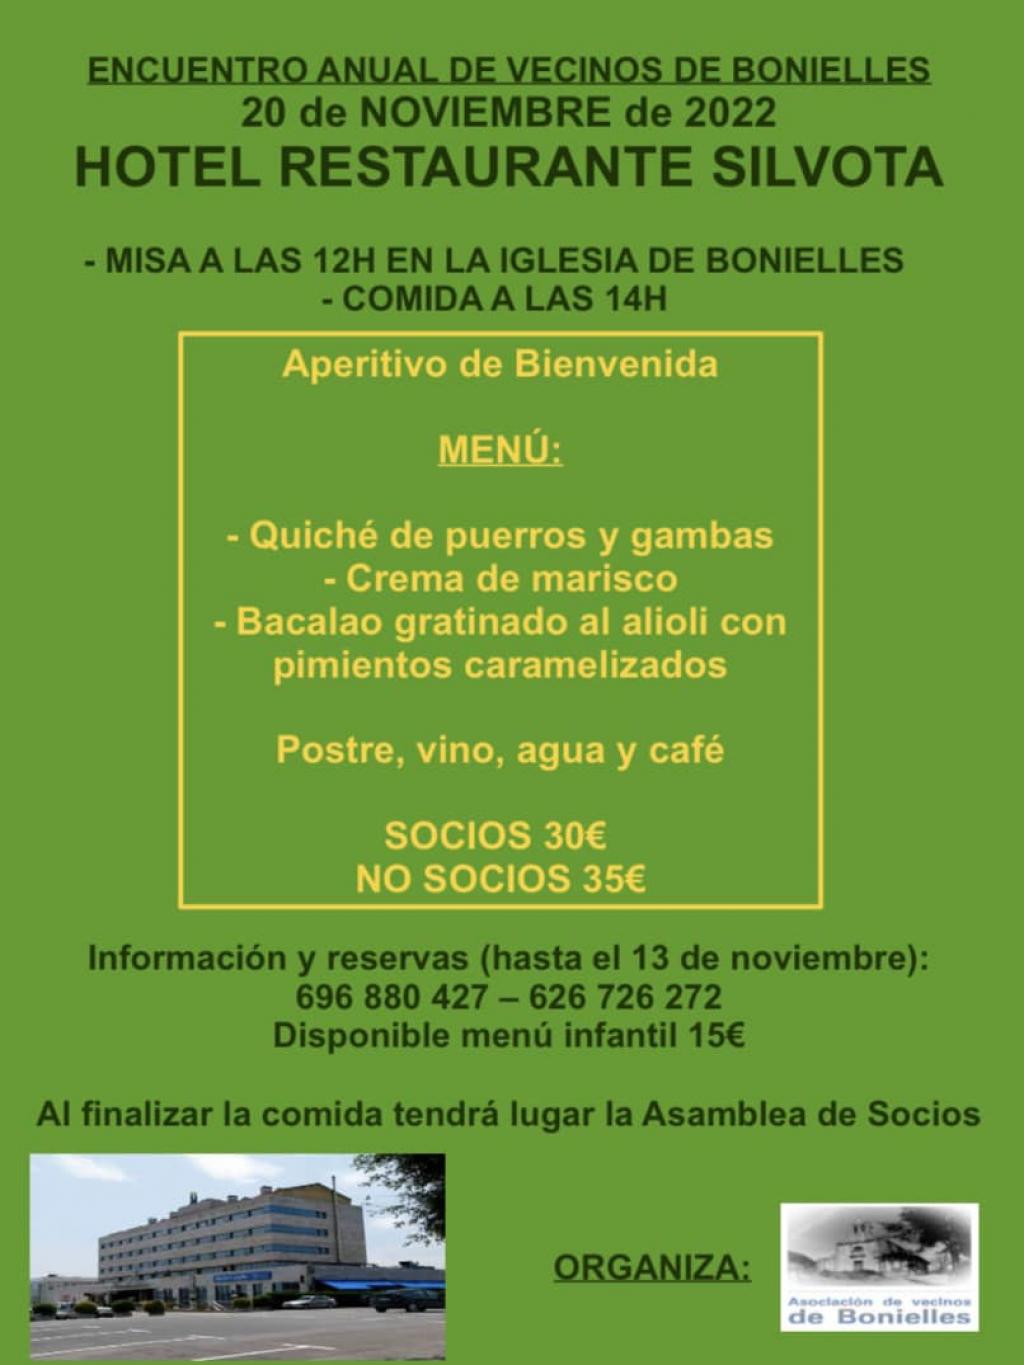 El Tapin - La Asociación de Vecinos de Bonielles organiza el 20 de noviembre su encuentro anual en el Hotel Silvota